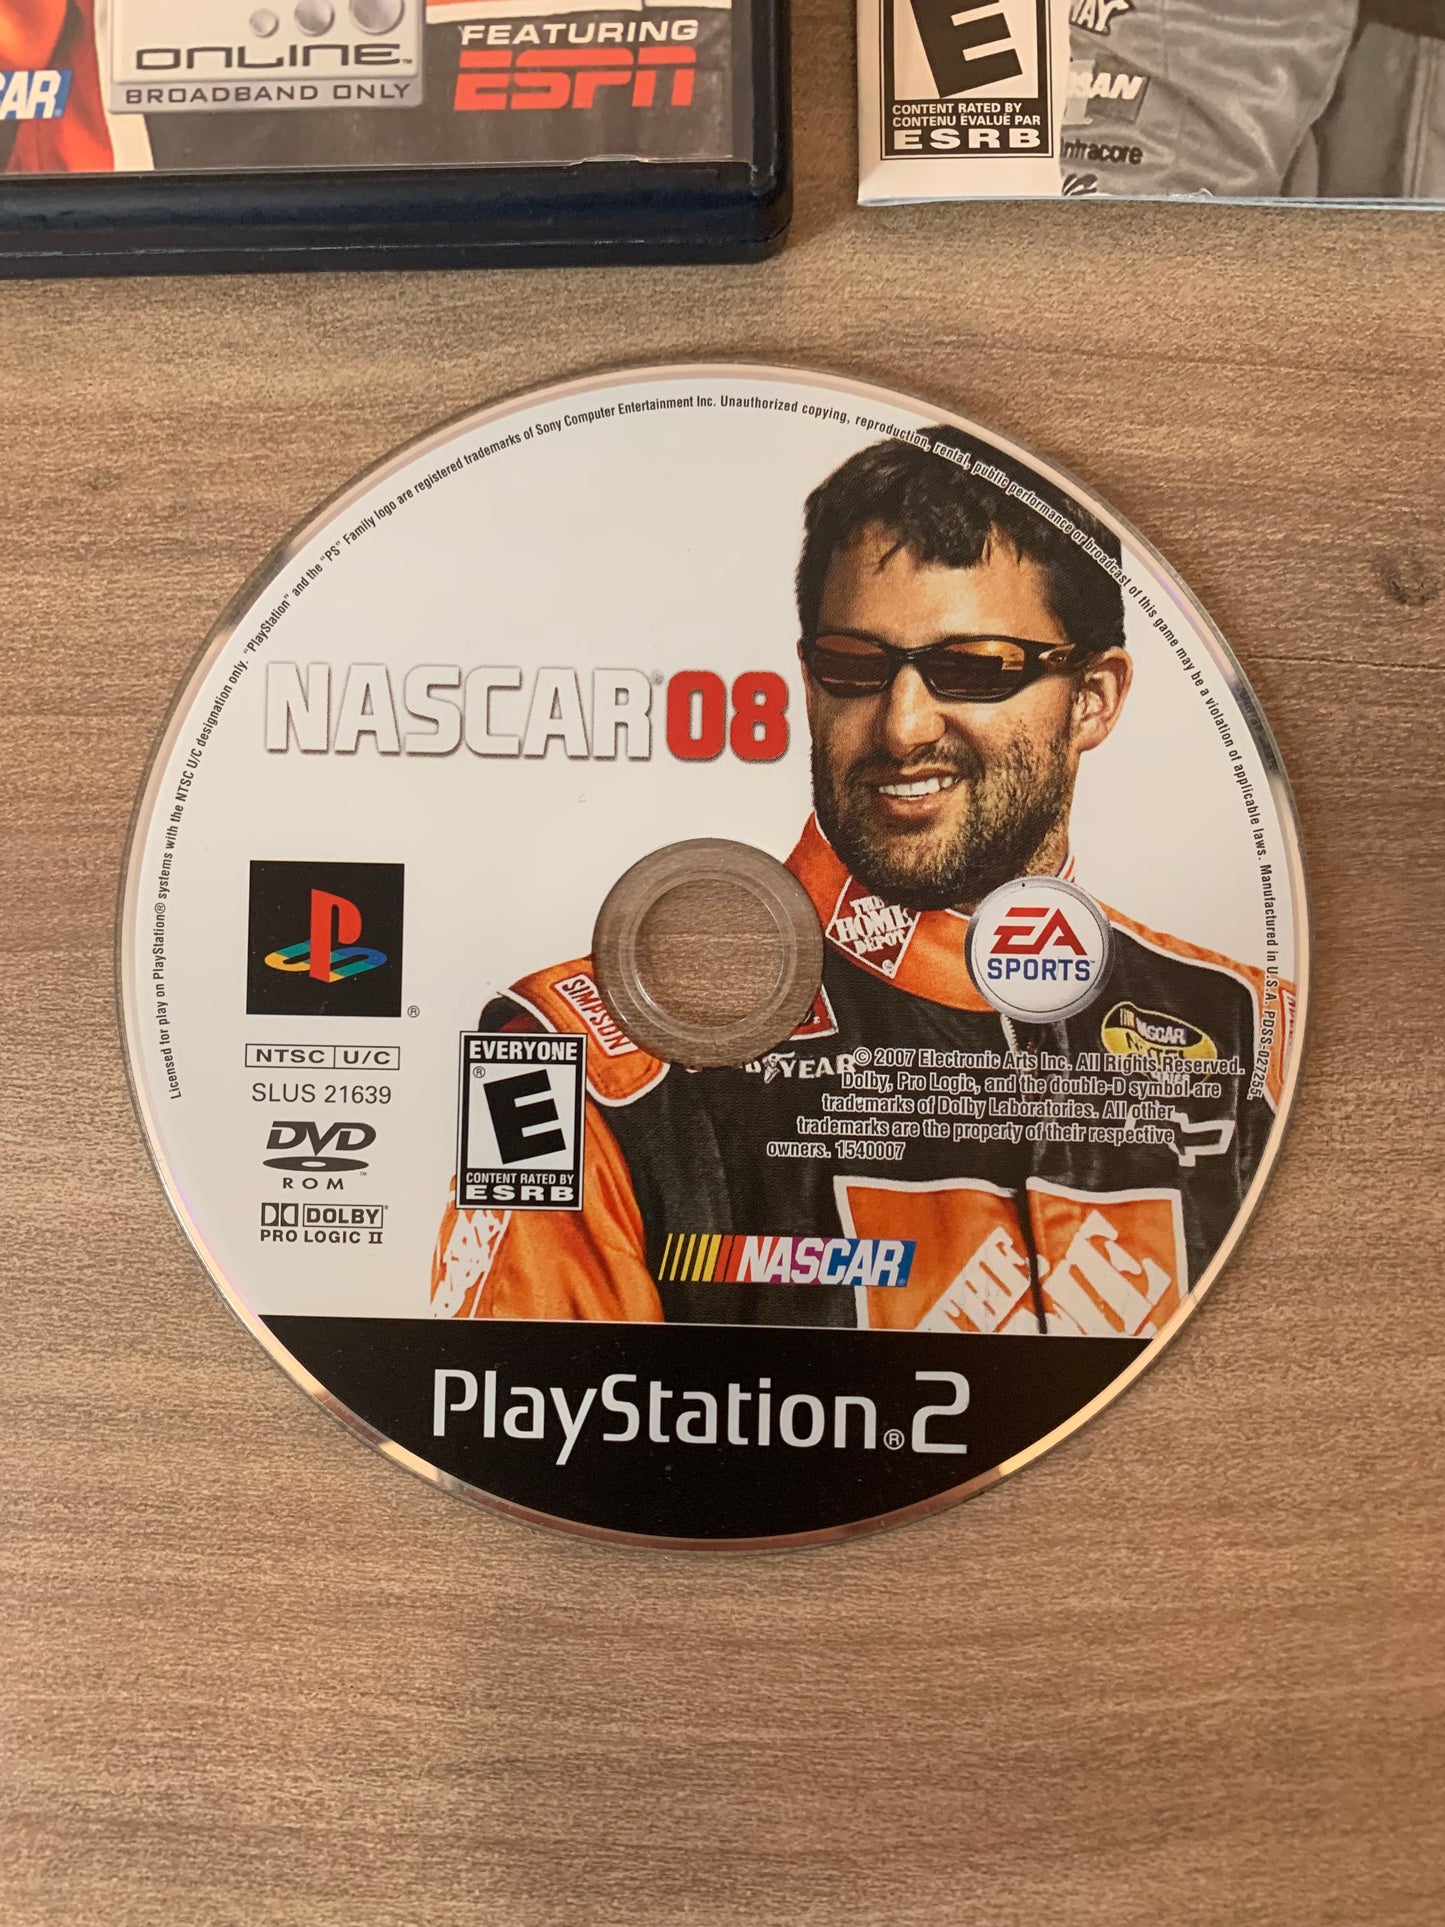 SONY PLAYSTATiON 2 [PS2] | NASCAR 08